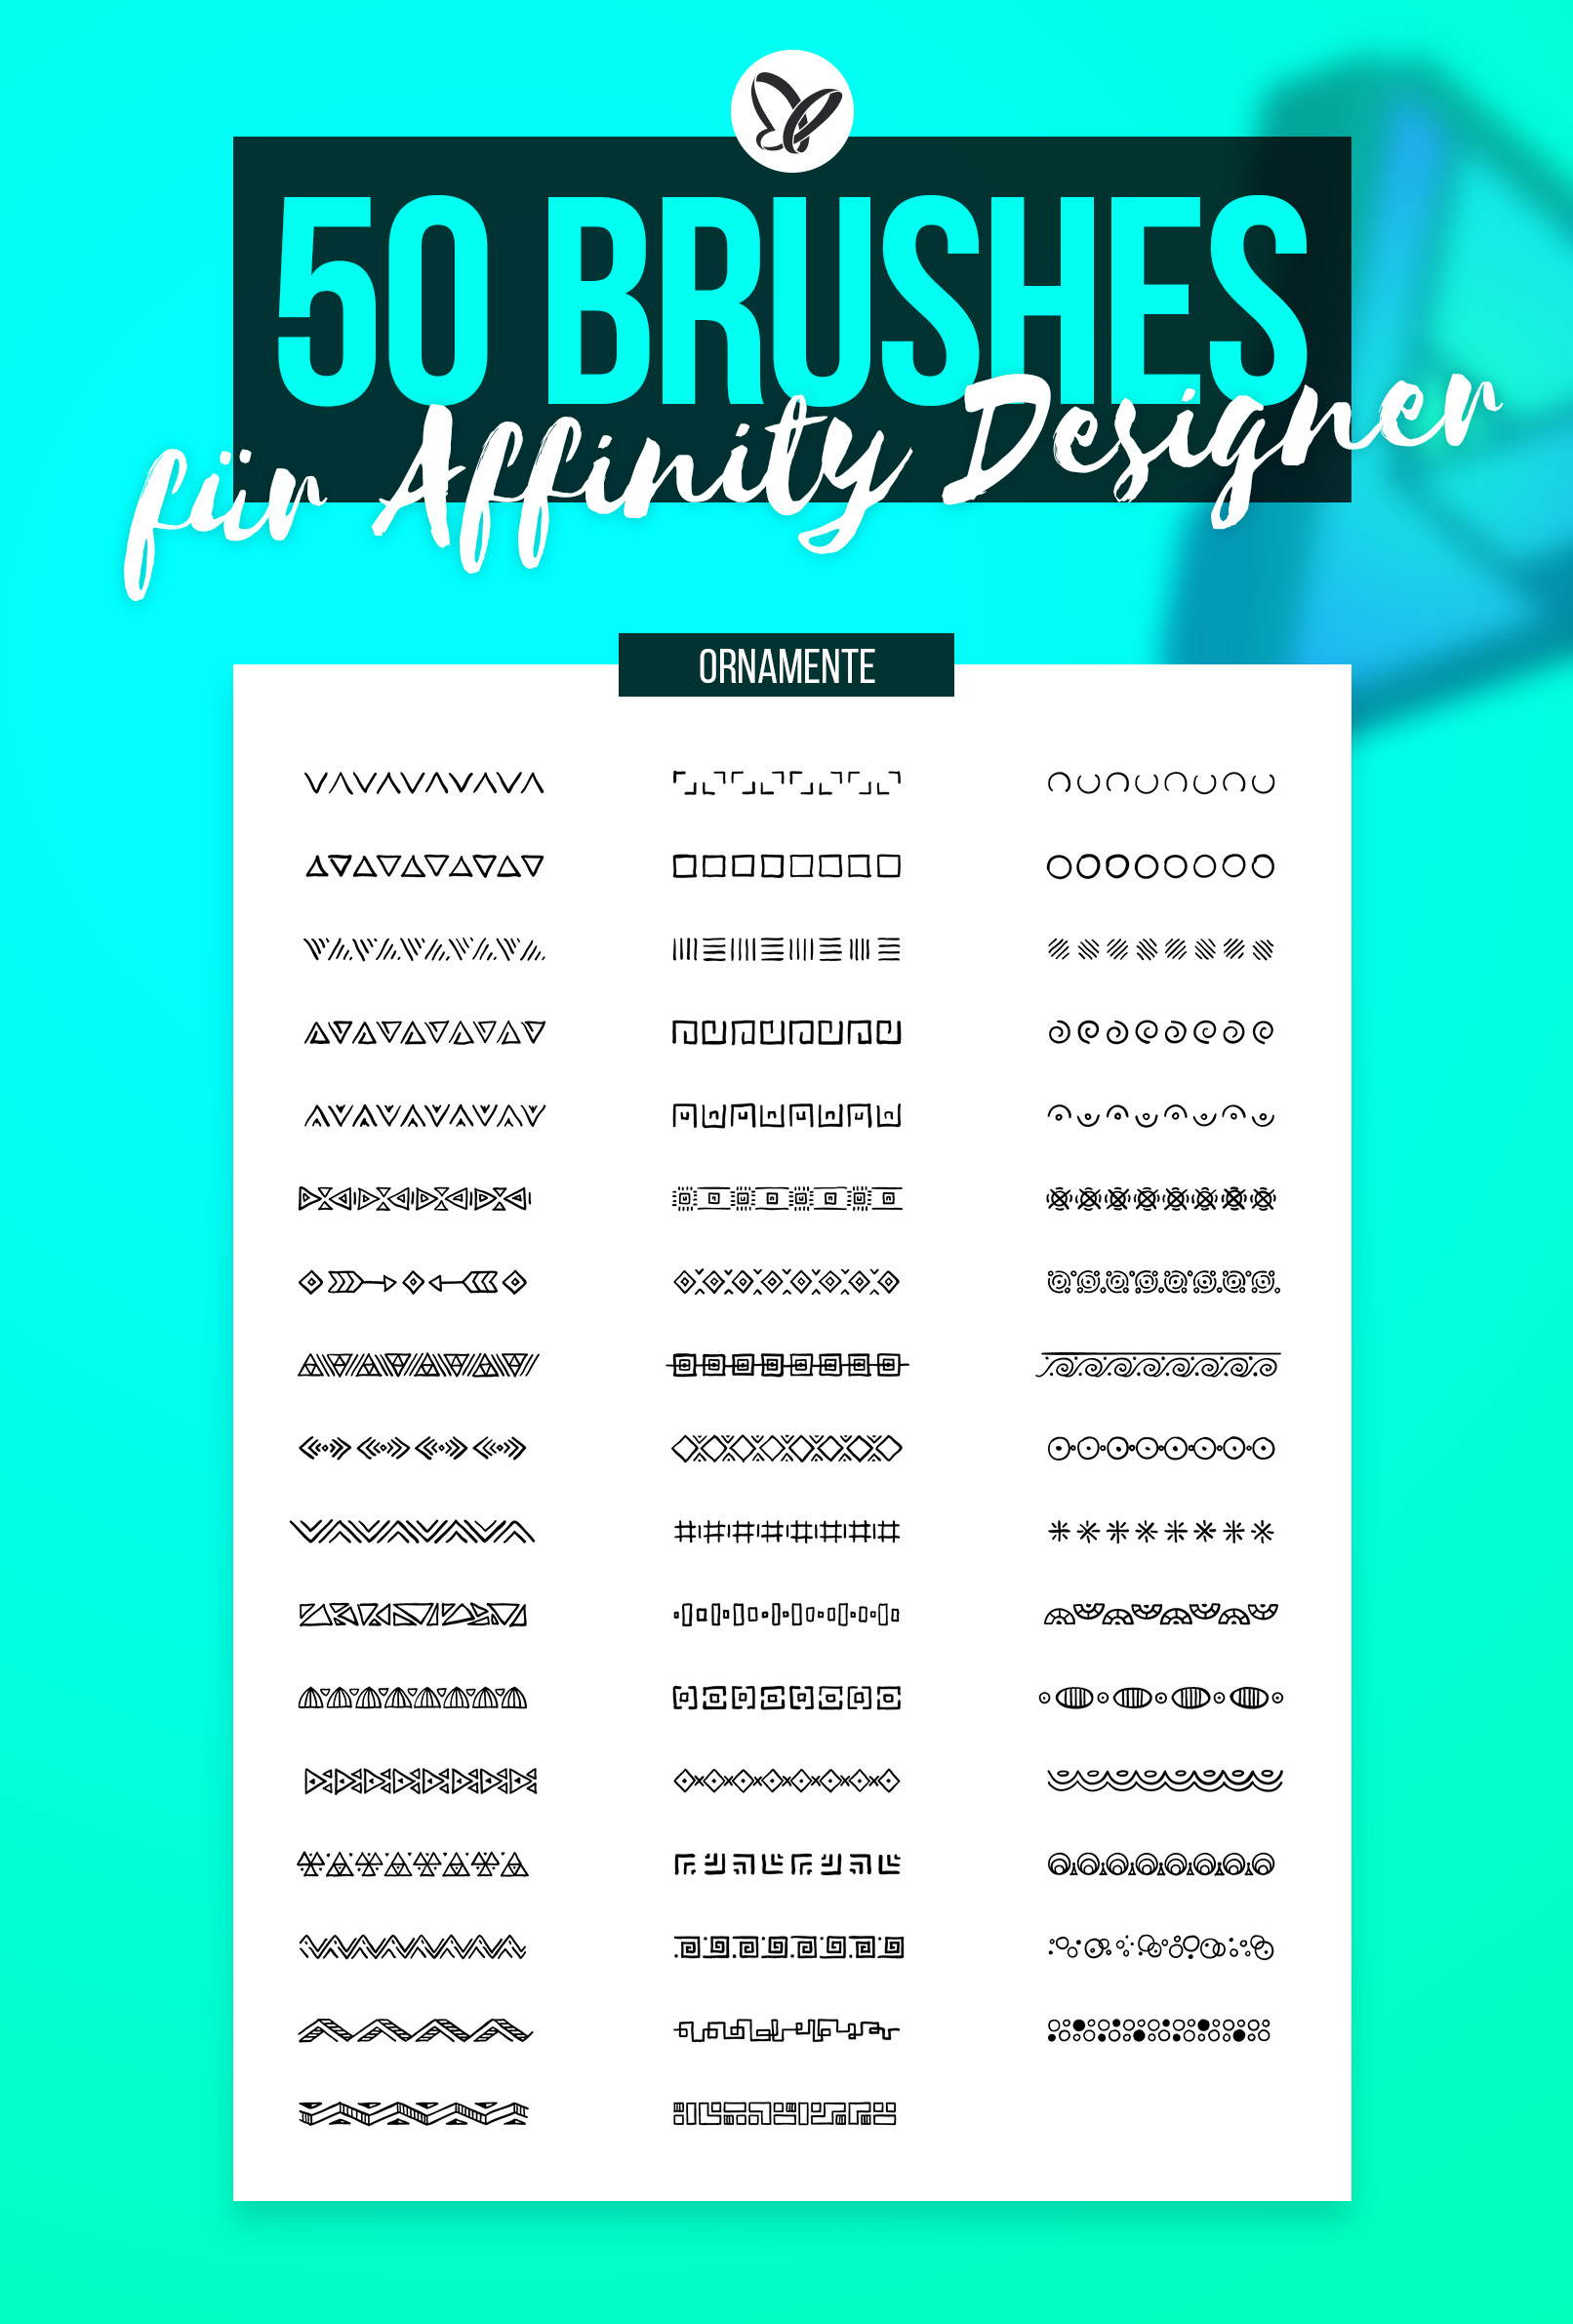 Affinity Designer 1.3 Download